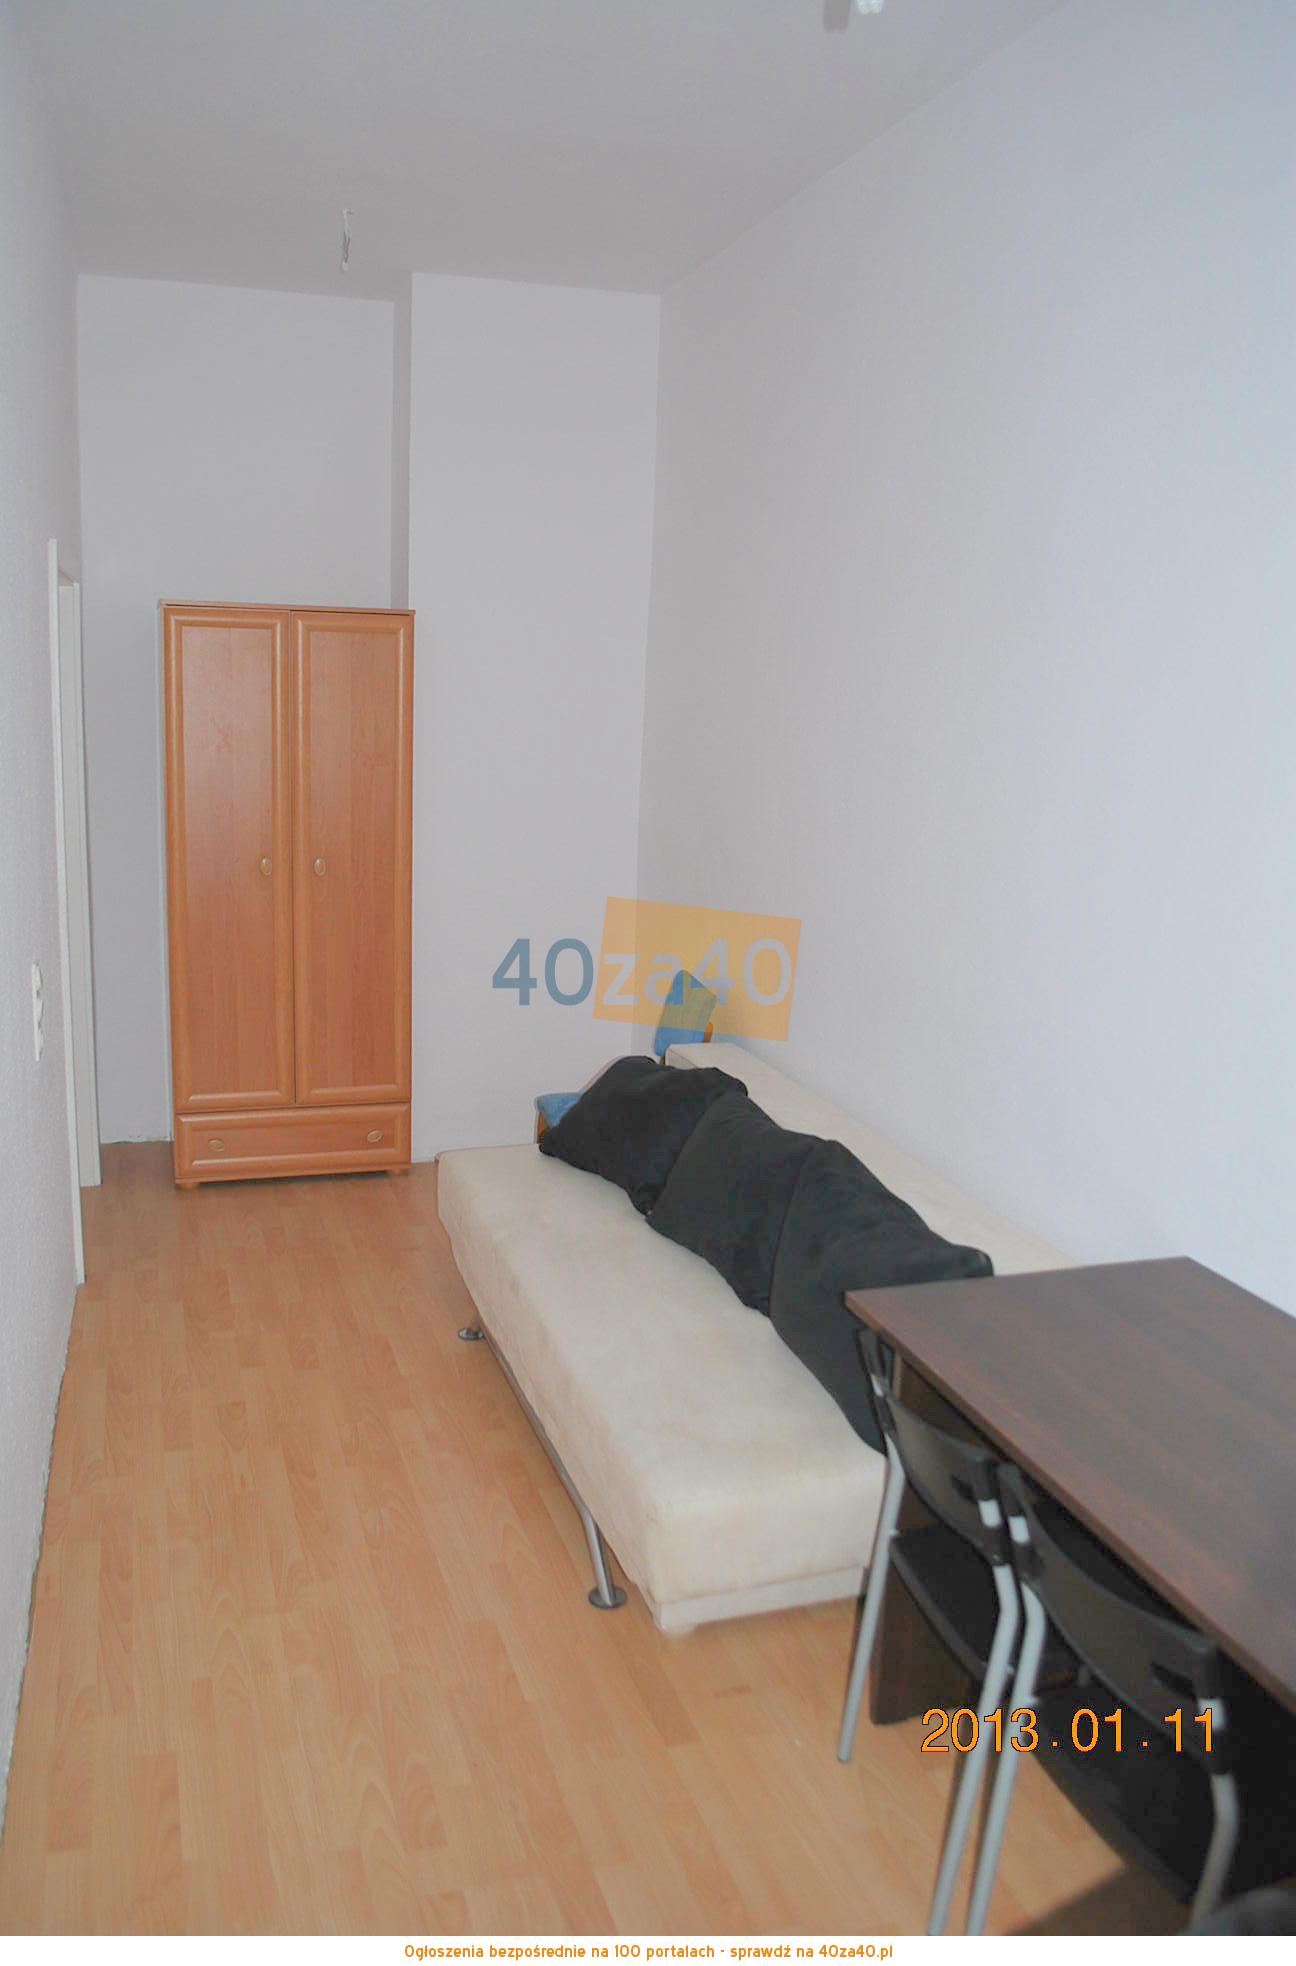 Mieszkanie do wynajęcia, pokoje: 1, cena: 187,00 PLN, kontakt: 888 262 363